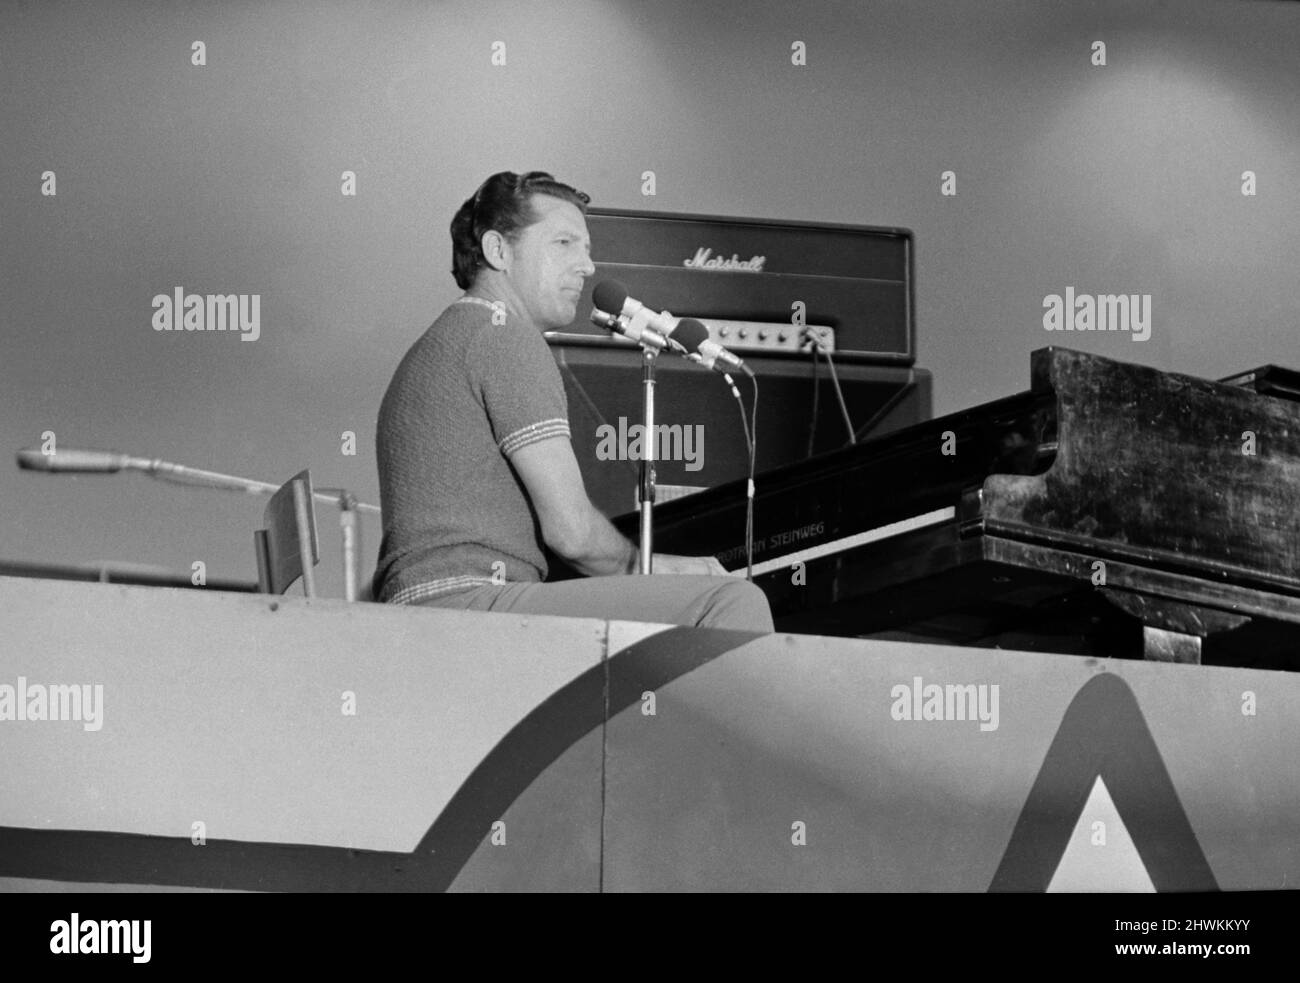 Jerry Lee Lewis, chanteur et musicien américain de rock and roll, se présentant sur scène à un concert de rock and roll au stade Wembley. 5th août 1972. Banque D'Images